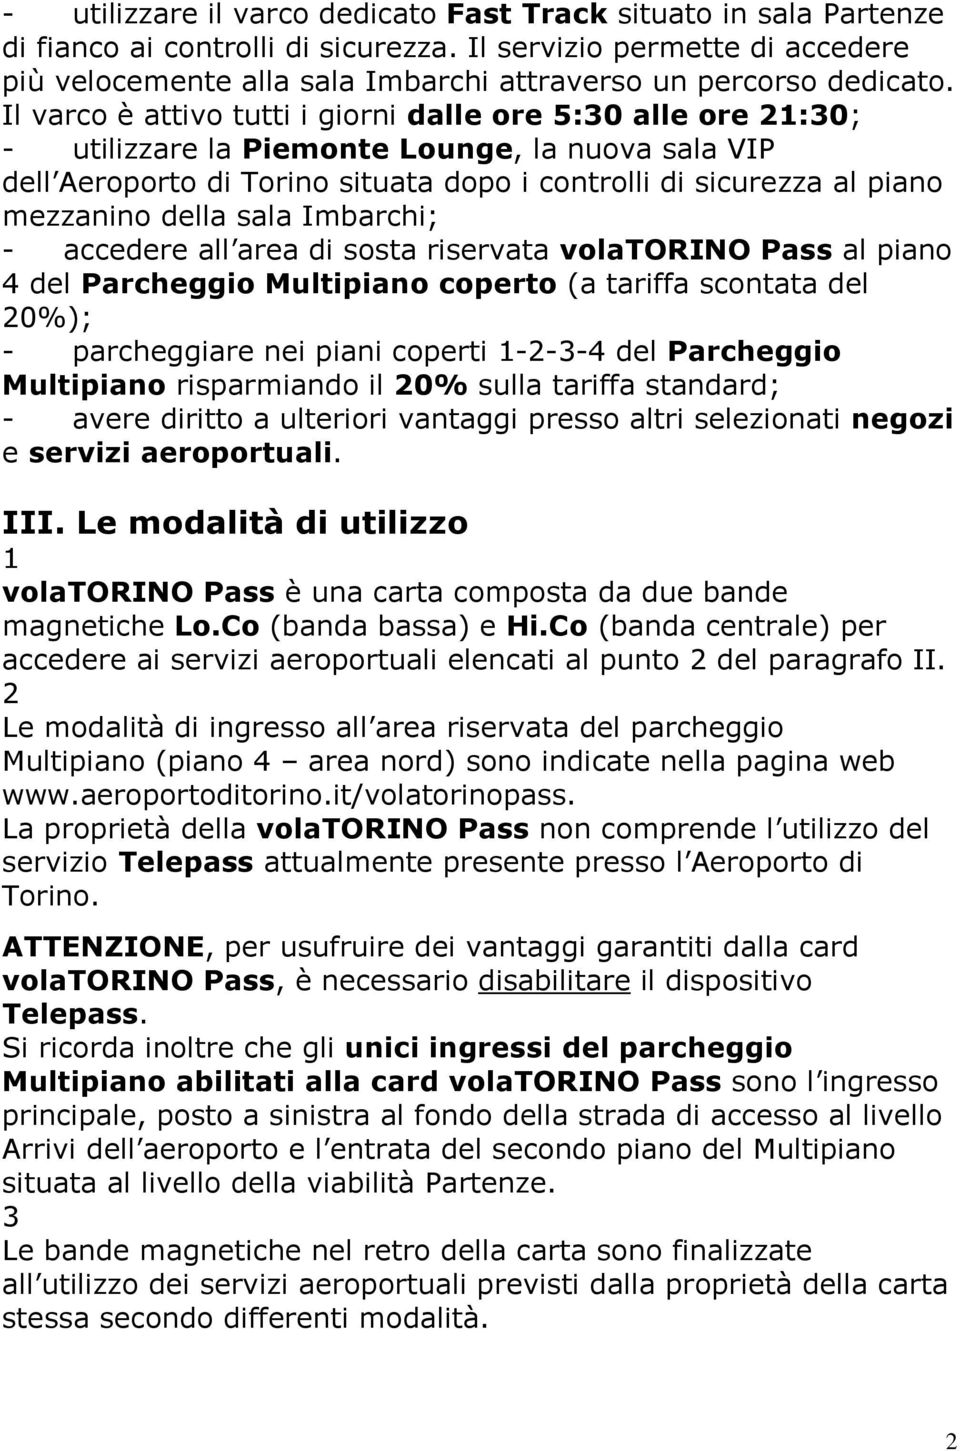 Il varco è attivo tutti i giorni dalle ore 5:0 alle ore :0; - utilizzare la Piemonte Lounge, la nuova sala VIP dell Aeroporto di Torino situata dopo i controlli di sicurezza al piano mezzanino della